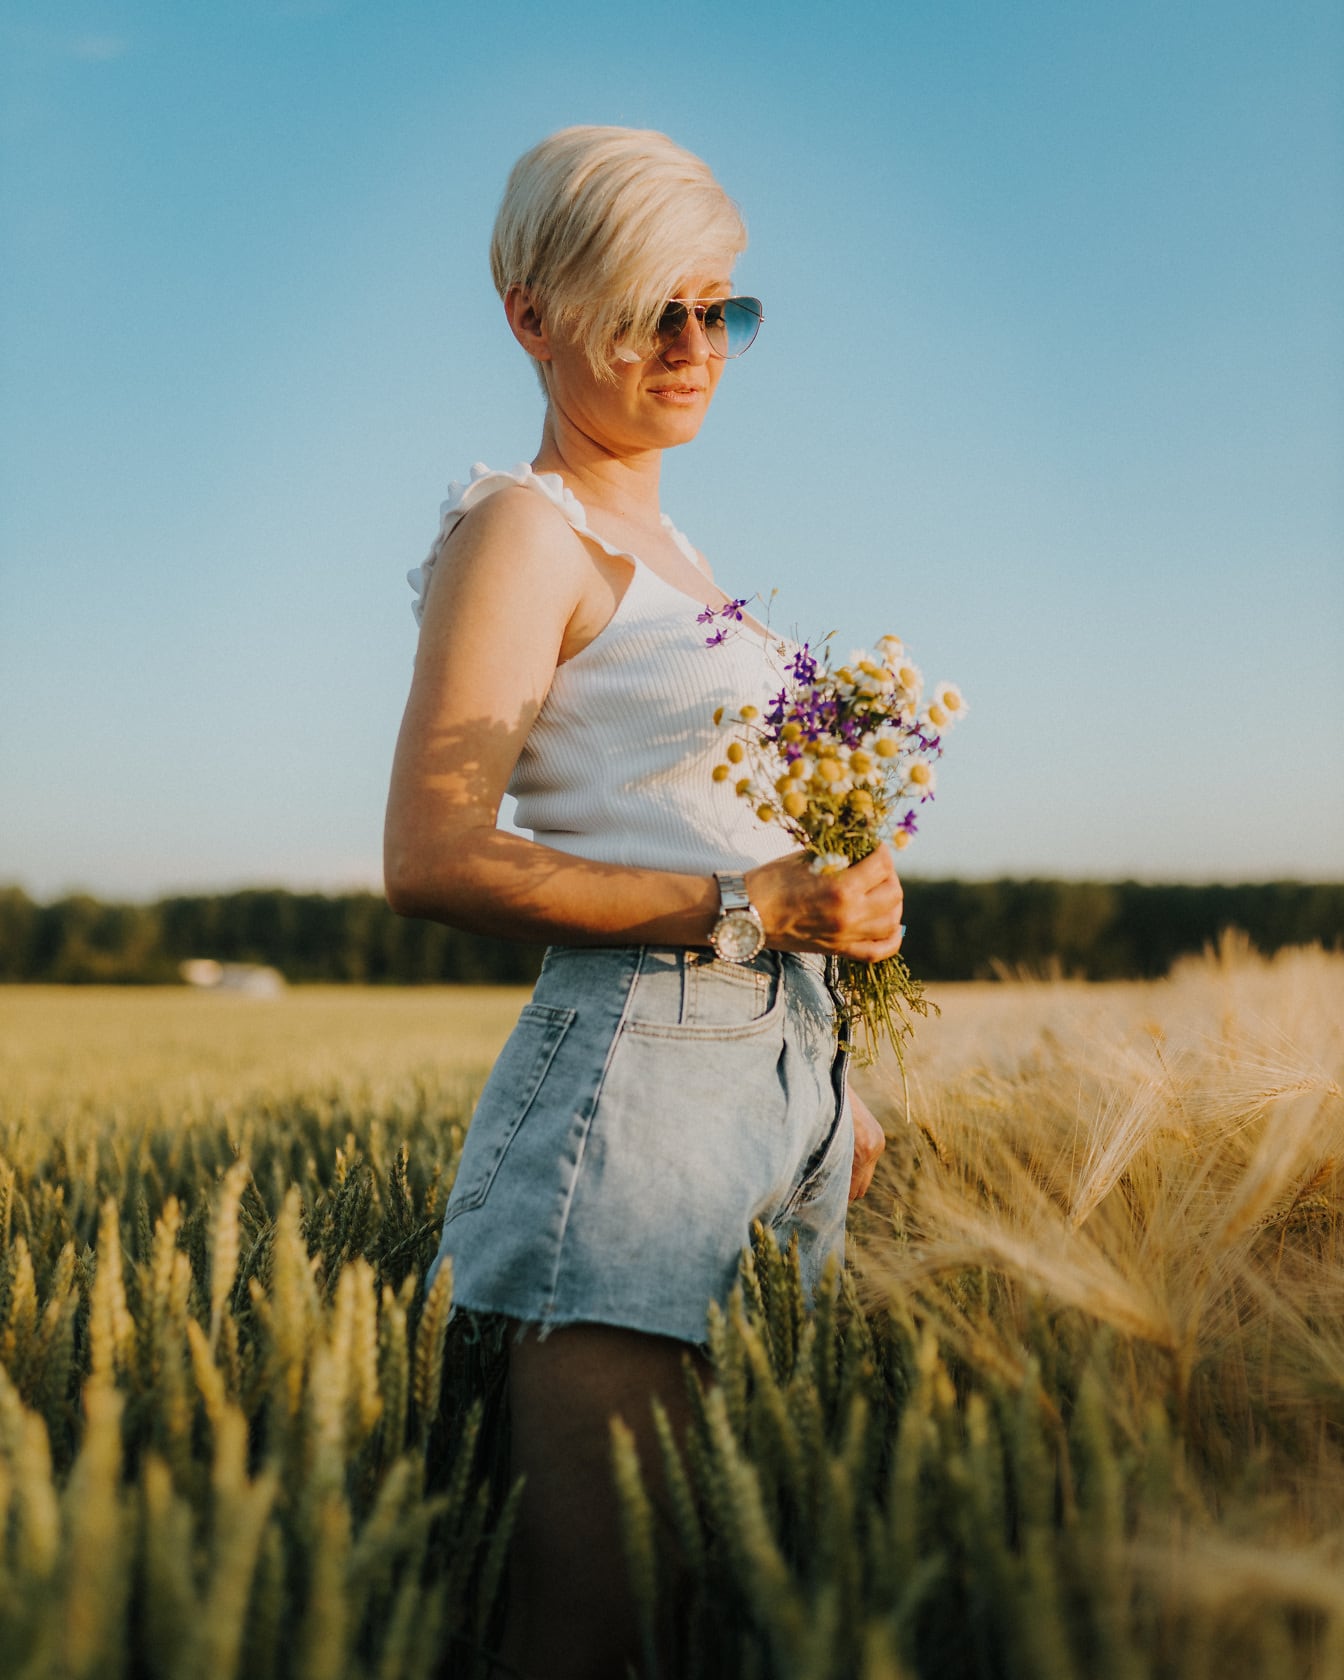 Prekrasna kratka kosa plava s buketom cvijeća u polju pšenice